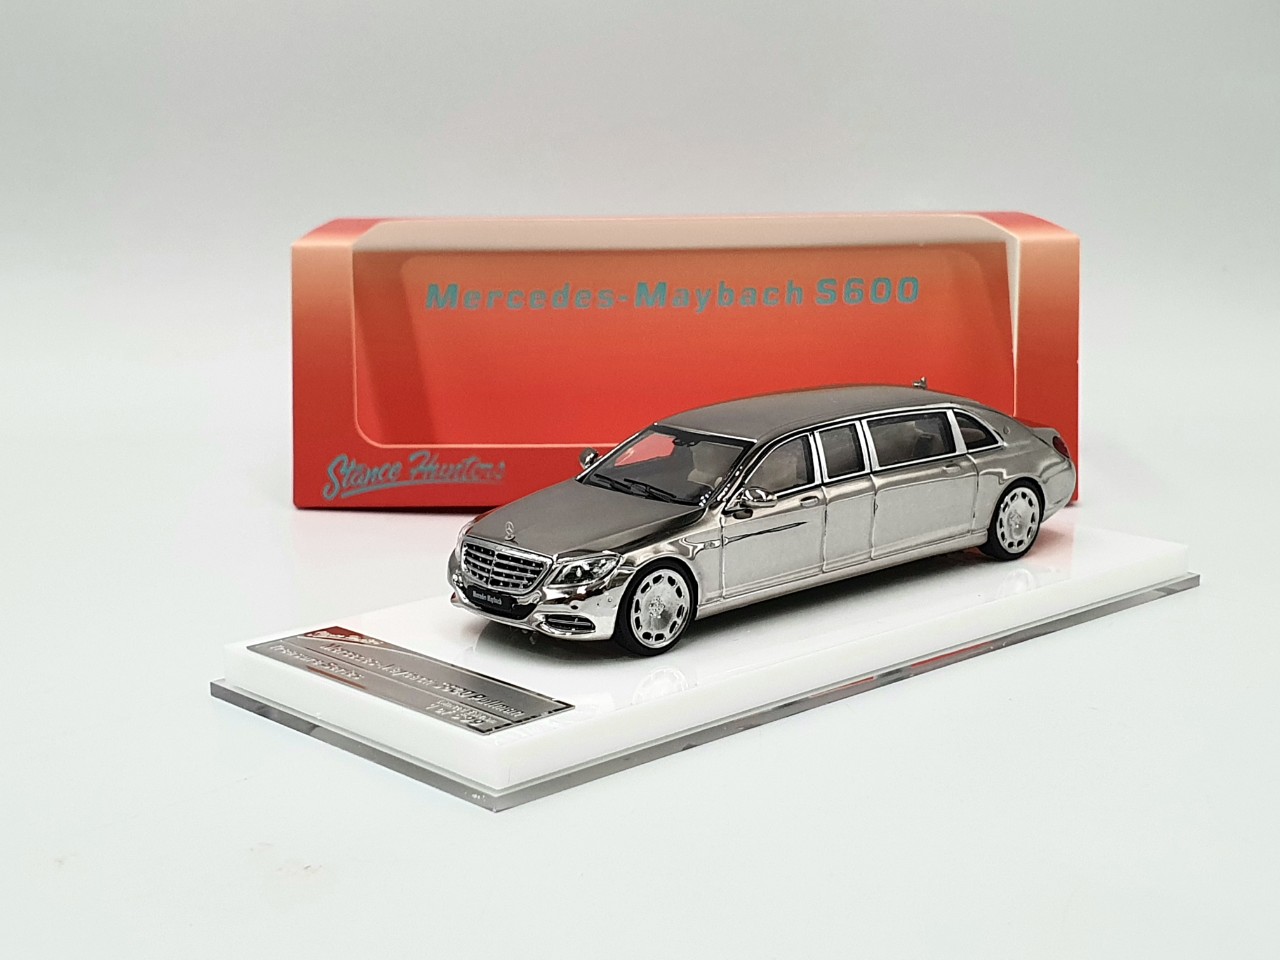 Xe mô hình ô tô MercedesBenz GLS600  Tỉ lệ 124  CHIMEI II  TẶNG  BIỂN SỐ  MixASale